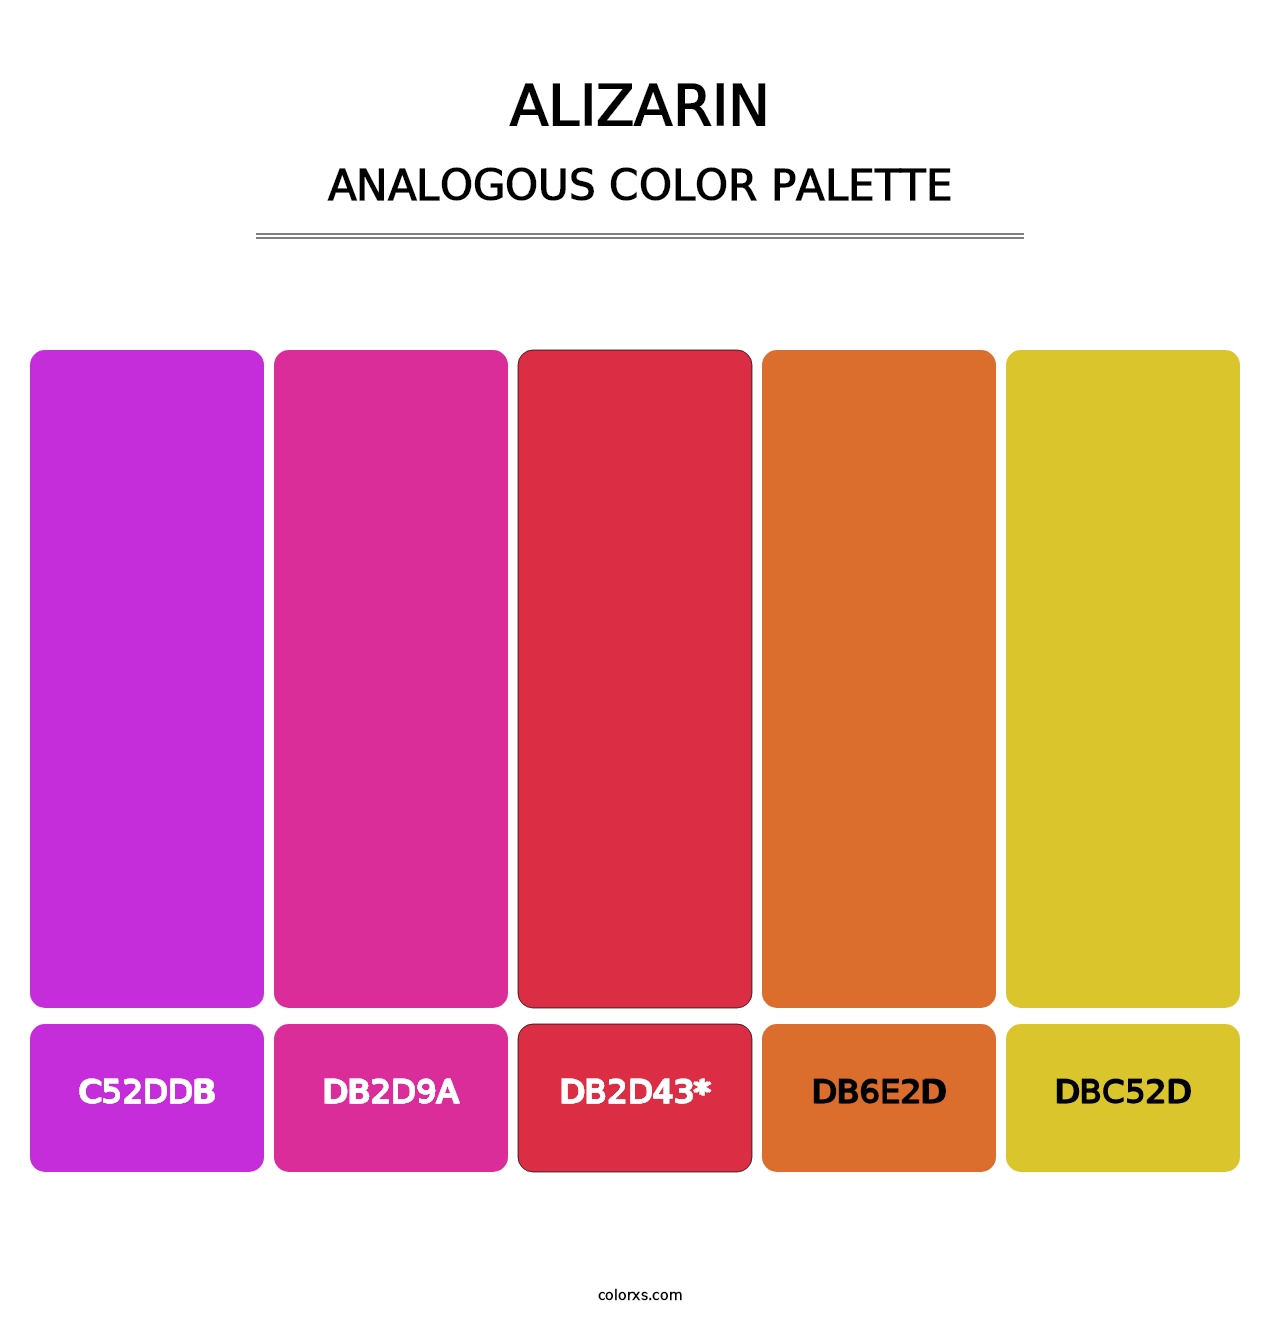 Alizarin - Analogous Color Palette